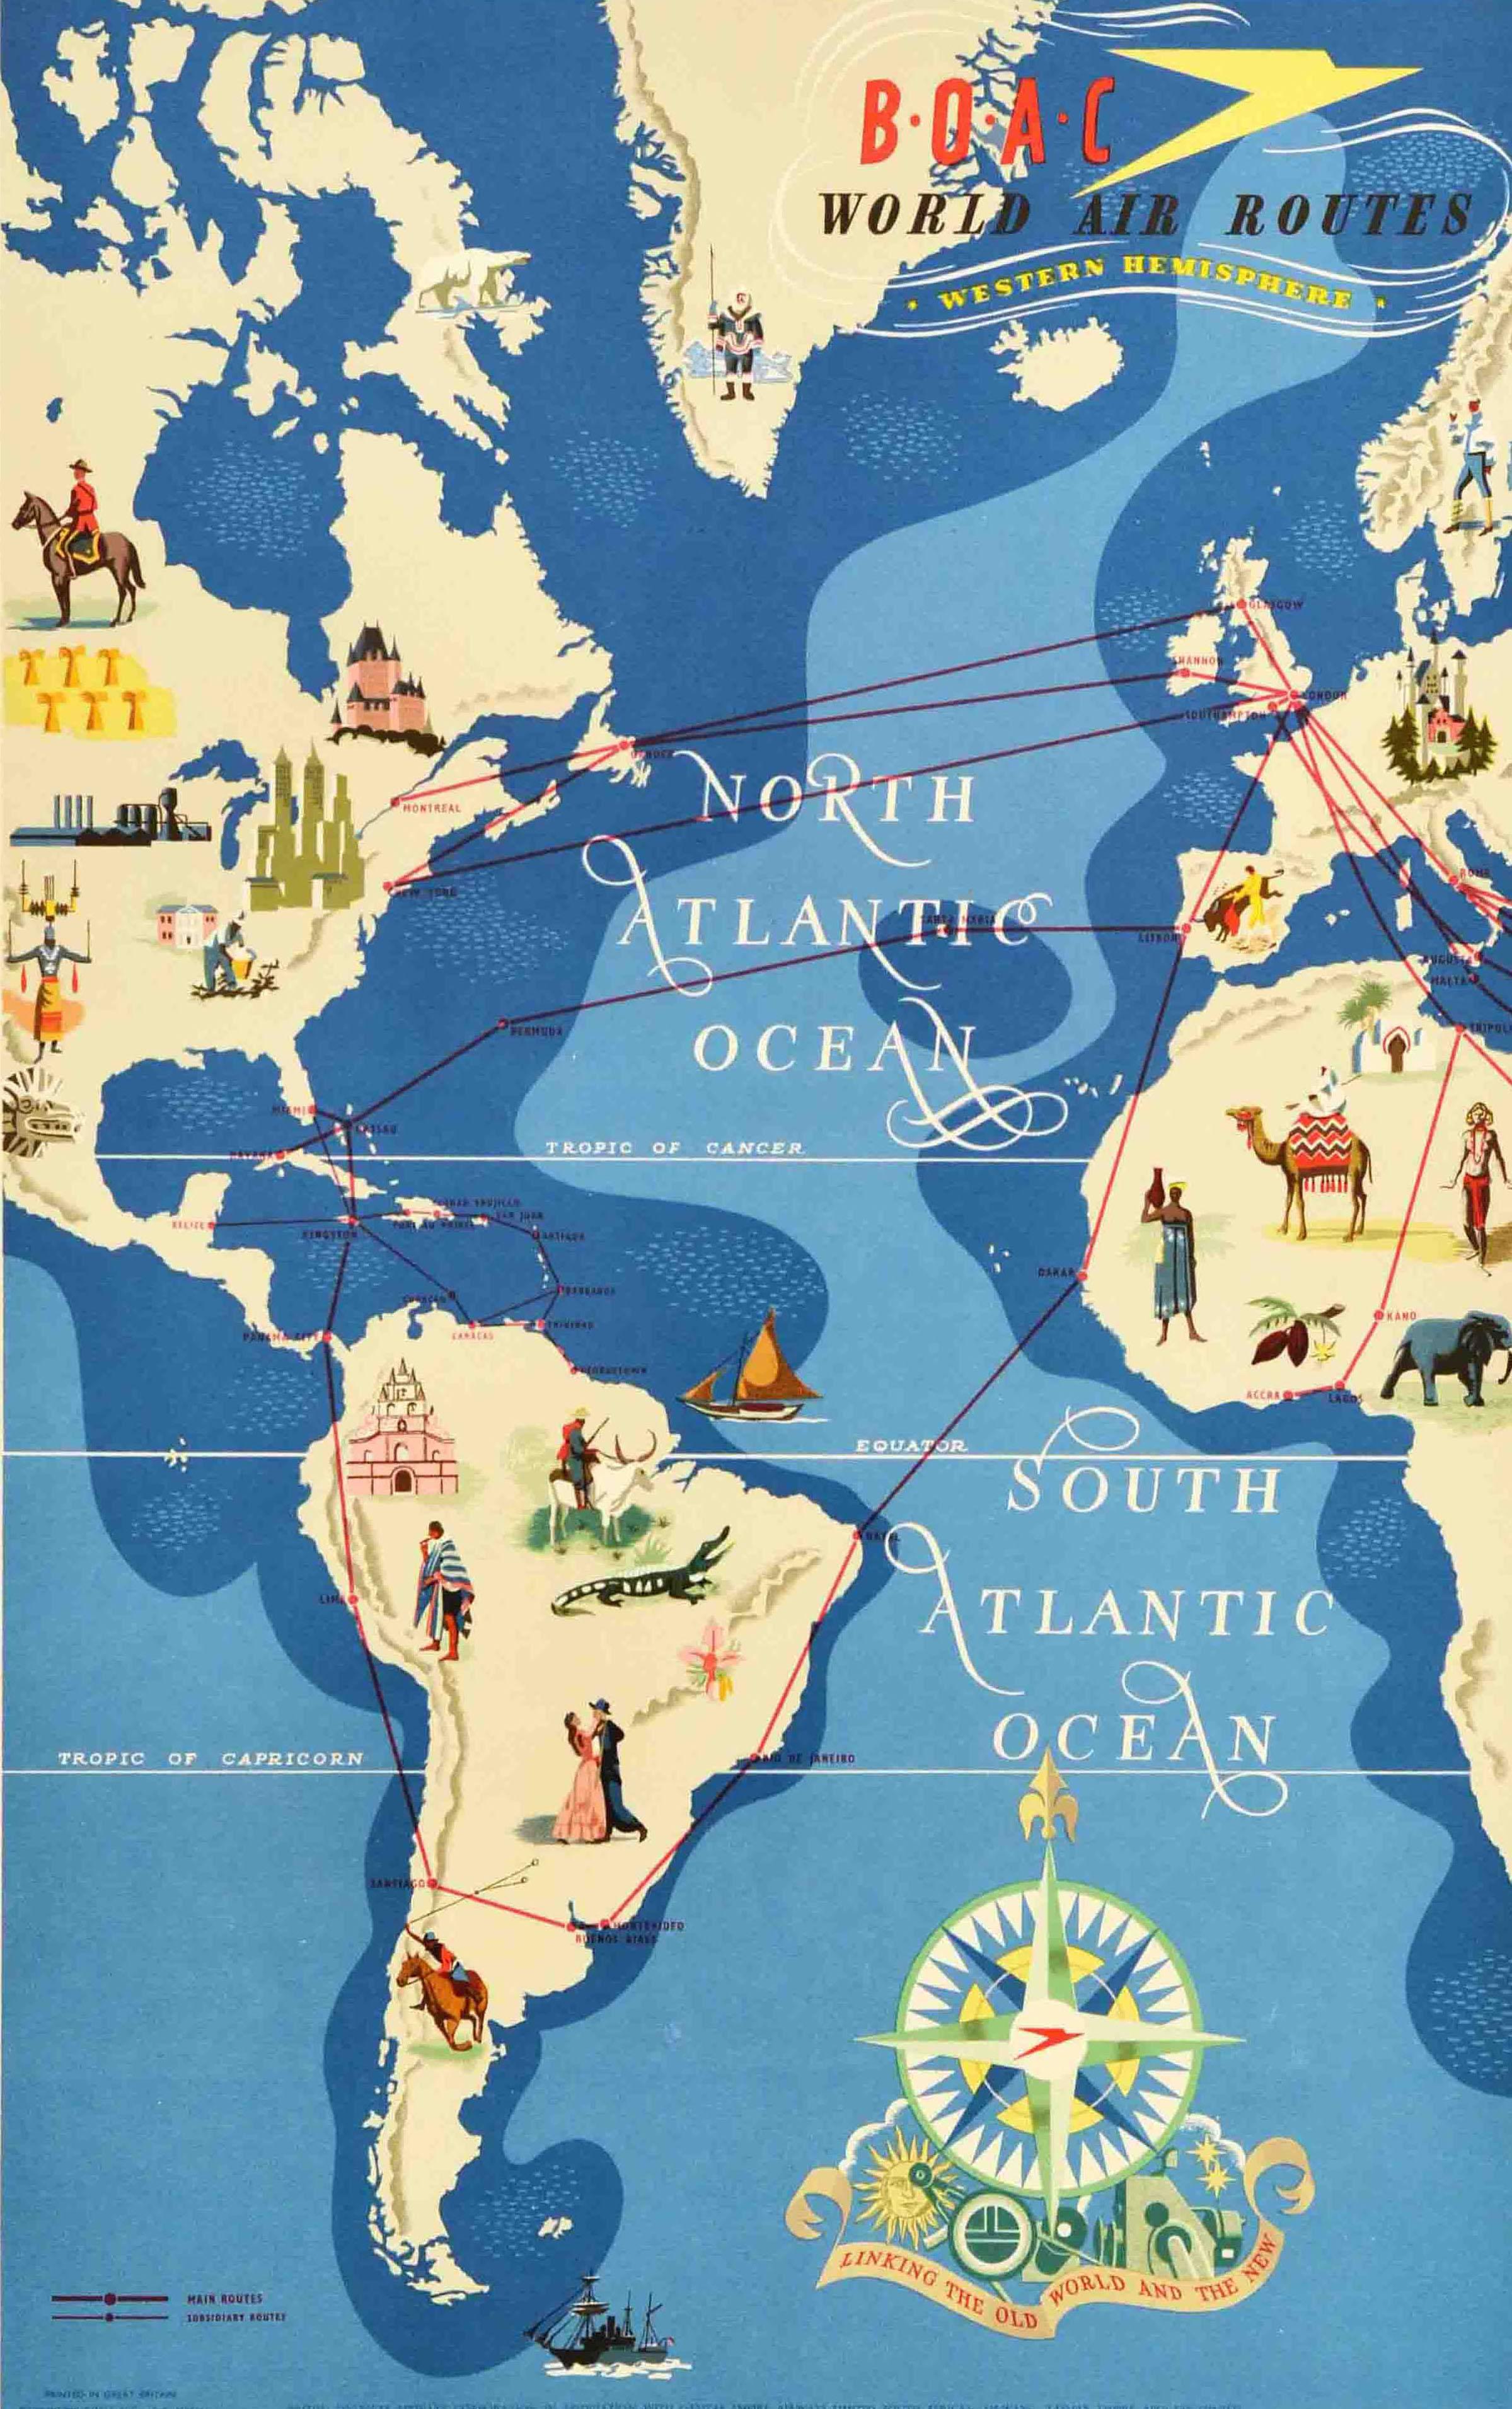 Affiche publicitaire originale d'époque pour BOAC World Air Routes Western Hemisphere présentant une carte picturale avec des illustrations colorées de personnes en costumes nationaux, de lieux d'intérêt historique, de chaînes de montagnes,